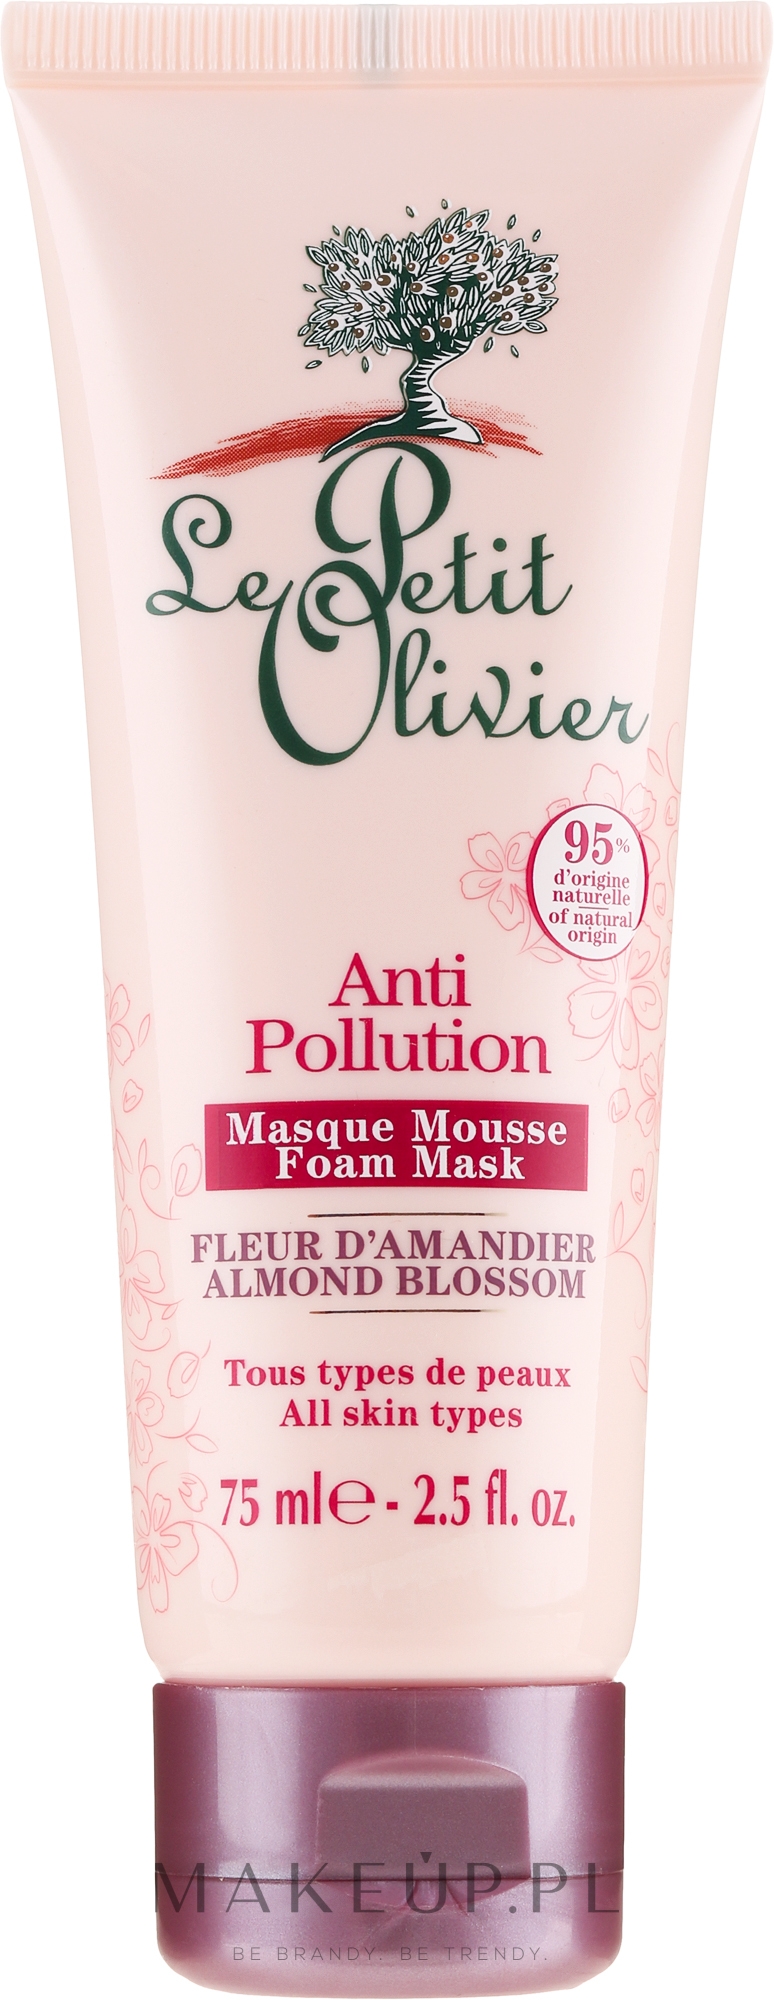 Pieniąca się maska przeciw zanieczyszczeniom Kwiat migdałowca - Le Petit Olivier Anti-Pollution Foam Mask Almond Blossom — Zdjęcie 75 ml